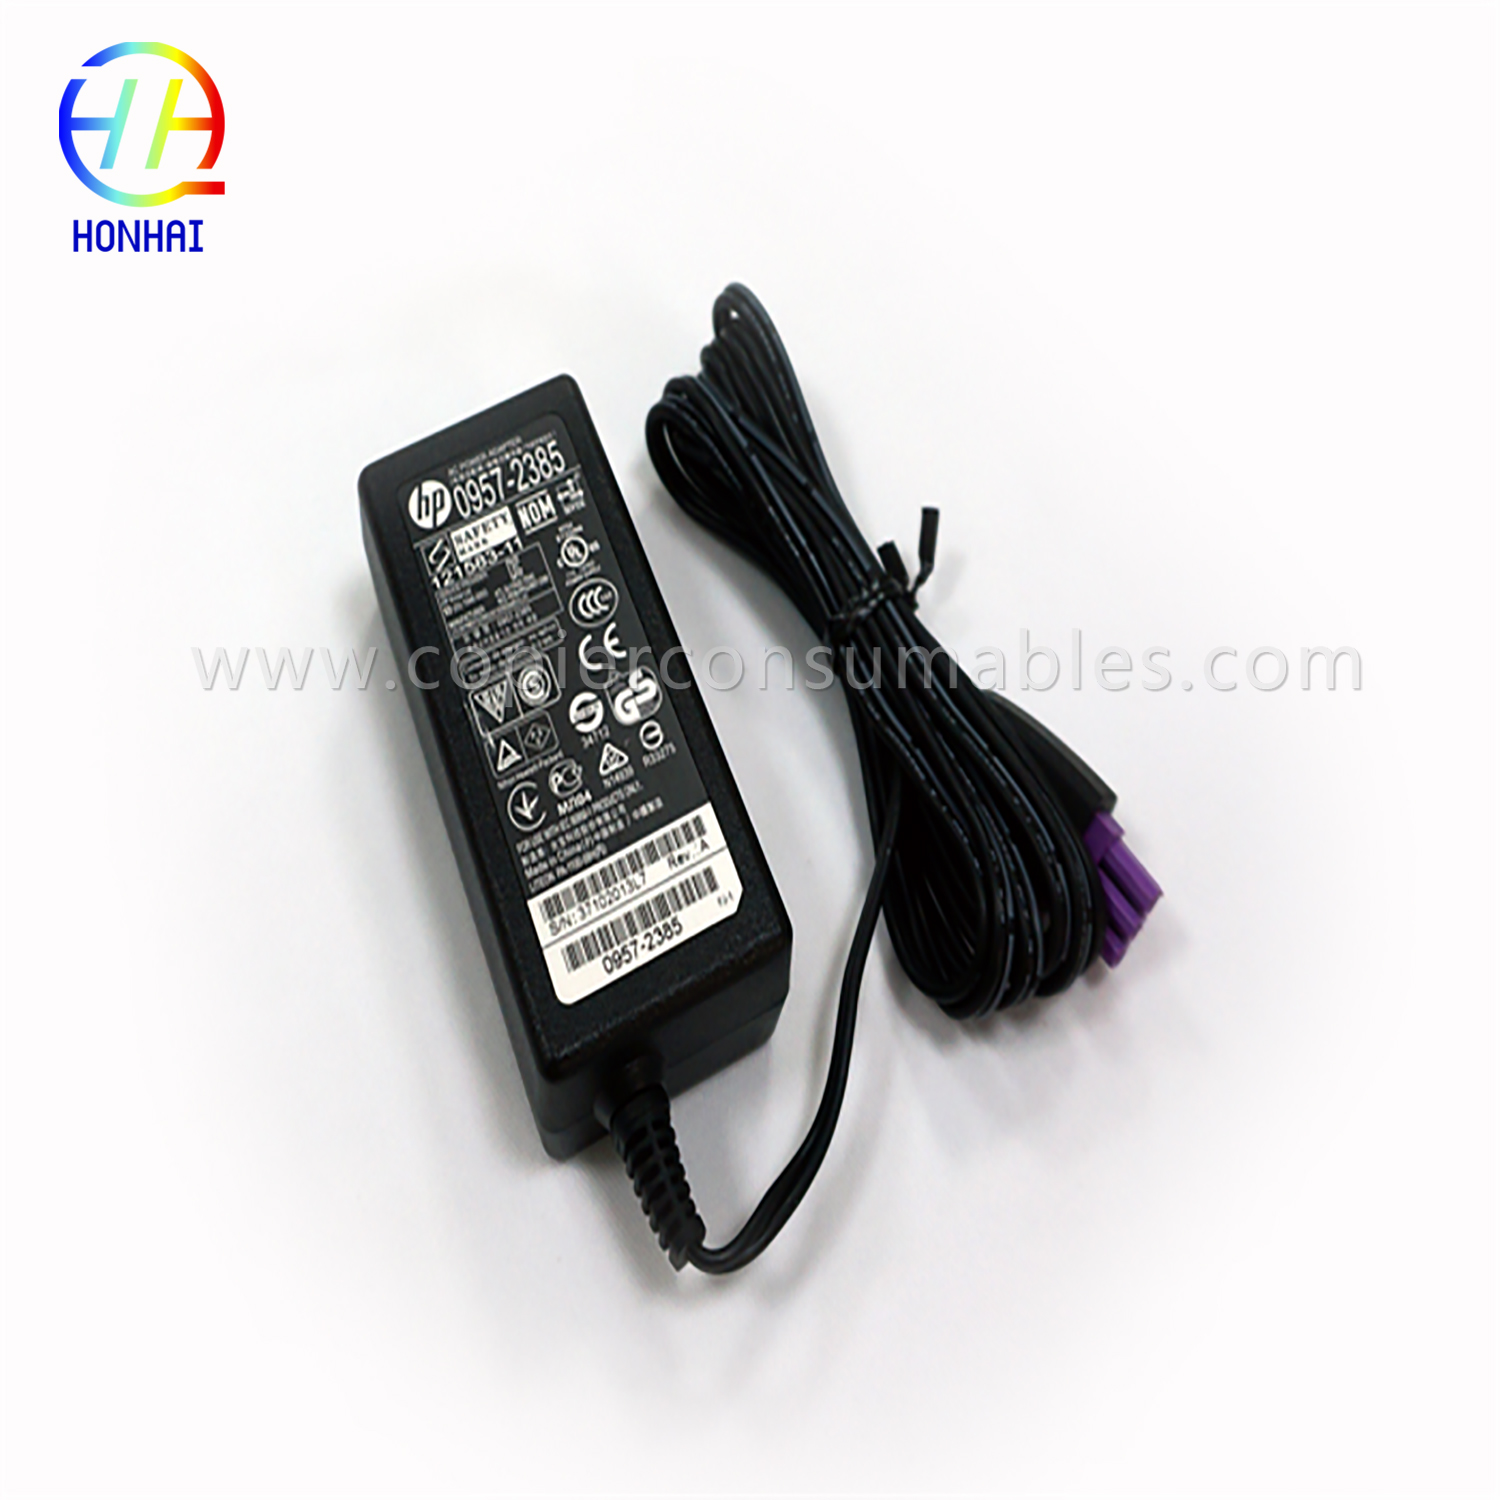 Power Adapter HP 1010 1510 1518-3 22v拷贝 (2)